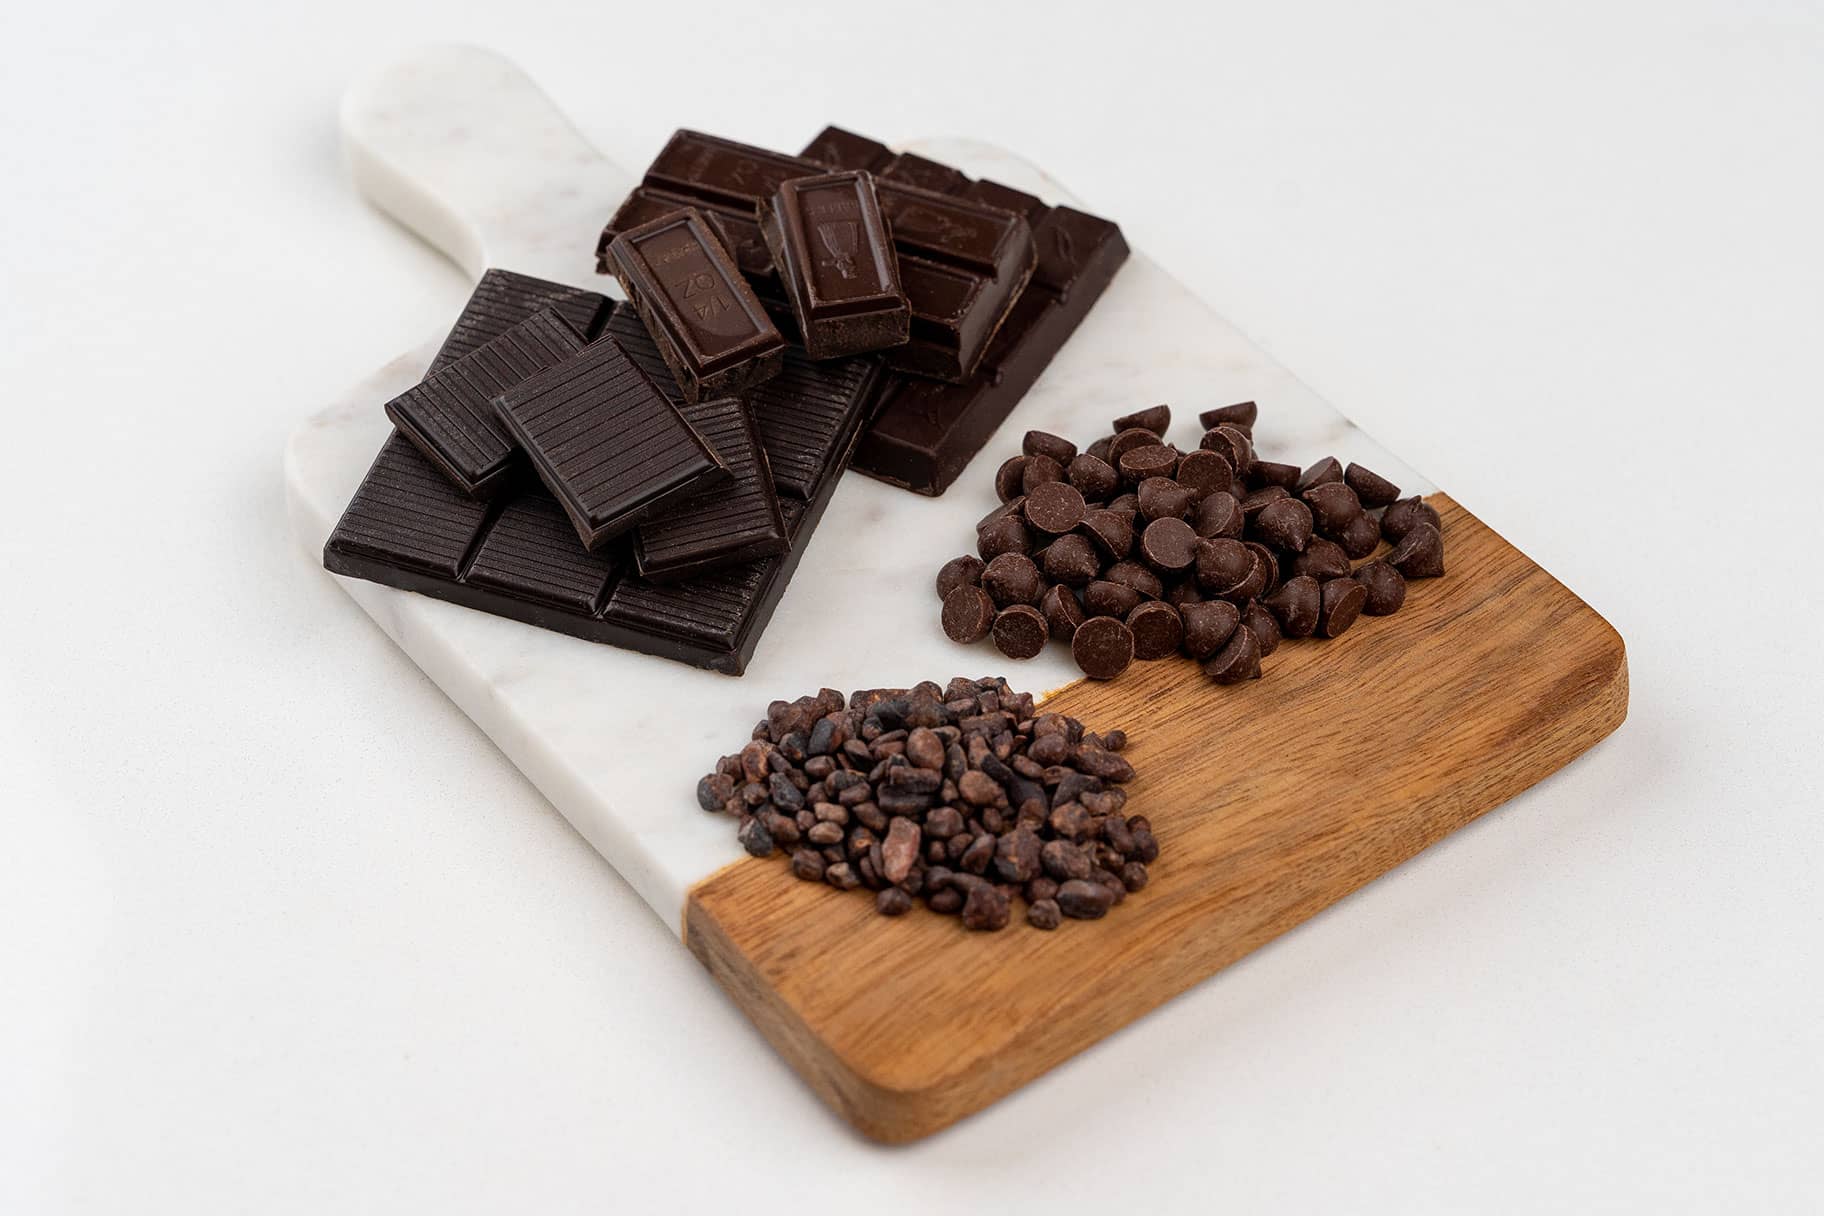 3 gesundheitliche Vorteile dunkler Schokolade – von einer Ernährungsberaterin erklärt 